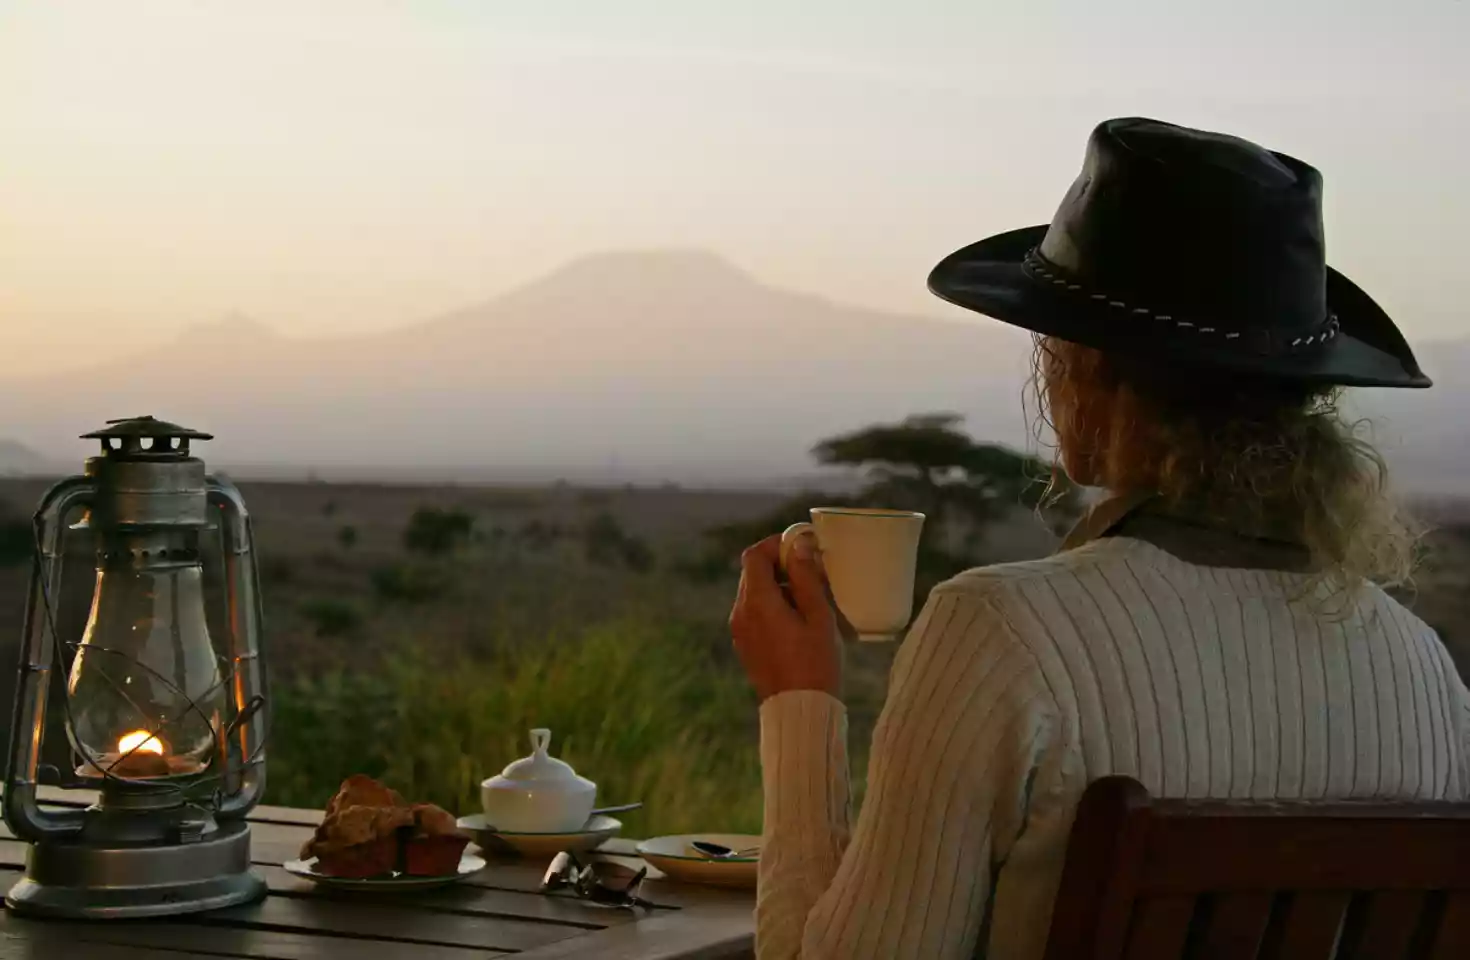 Dame i lærhatt drikker kaffi og sitter ved et trebord med scones og en lattern, mens den afrikanske savannen skinner i bakgrunnen.